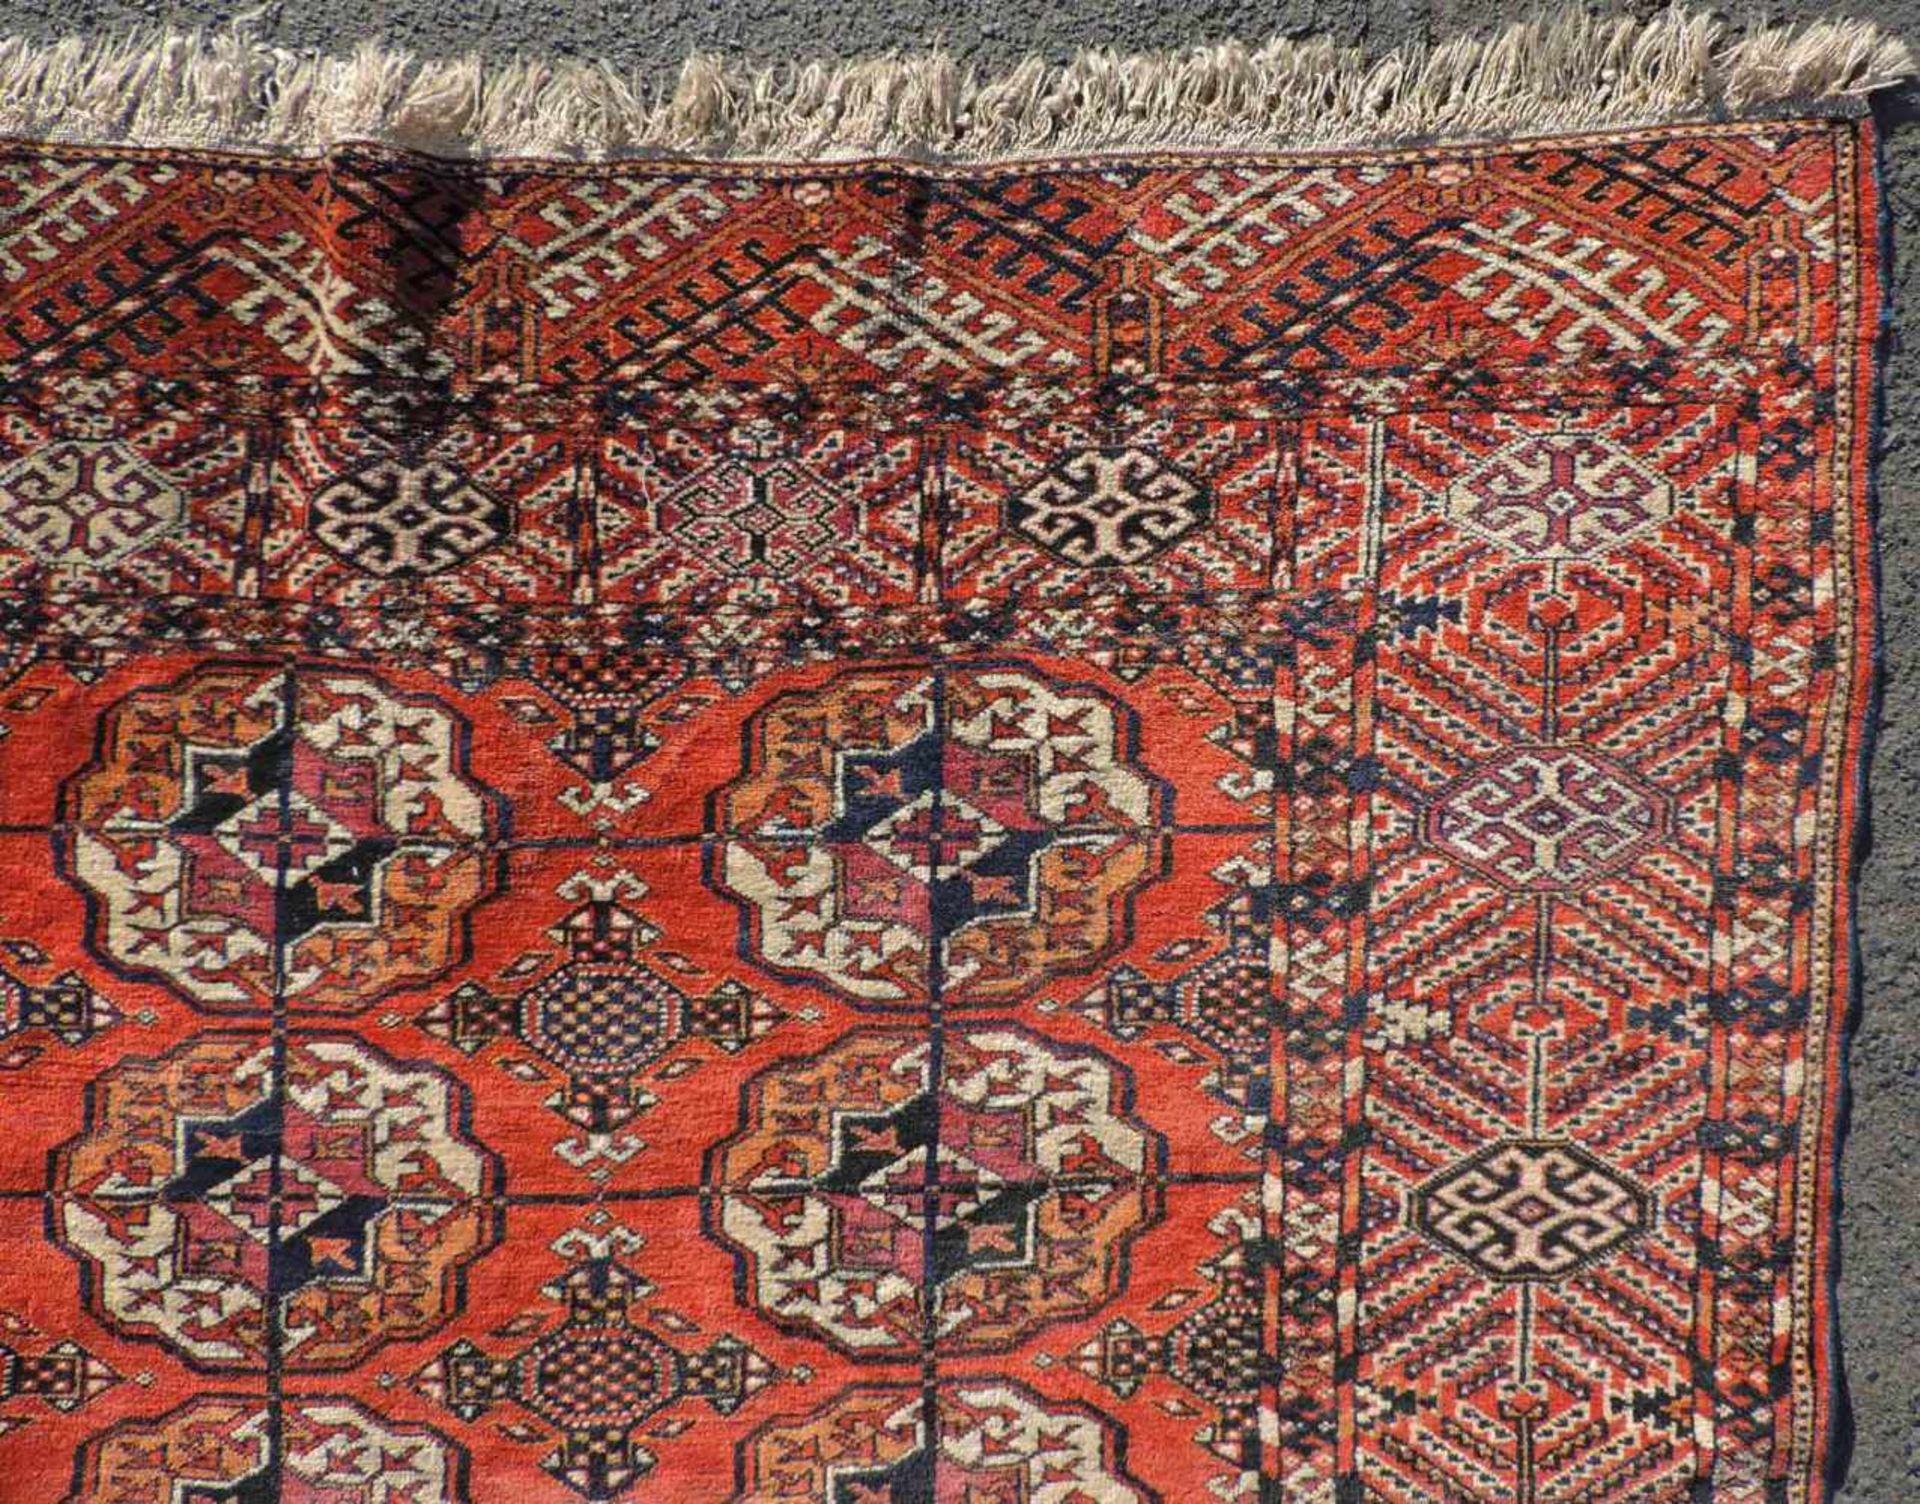 Jomud Stammesteppich. Iran. Antik, um 1910.309 cm x 210 cm. Handgeknüpft. Wolle auf Wolle. Göklan - Image 7 of 8